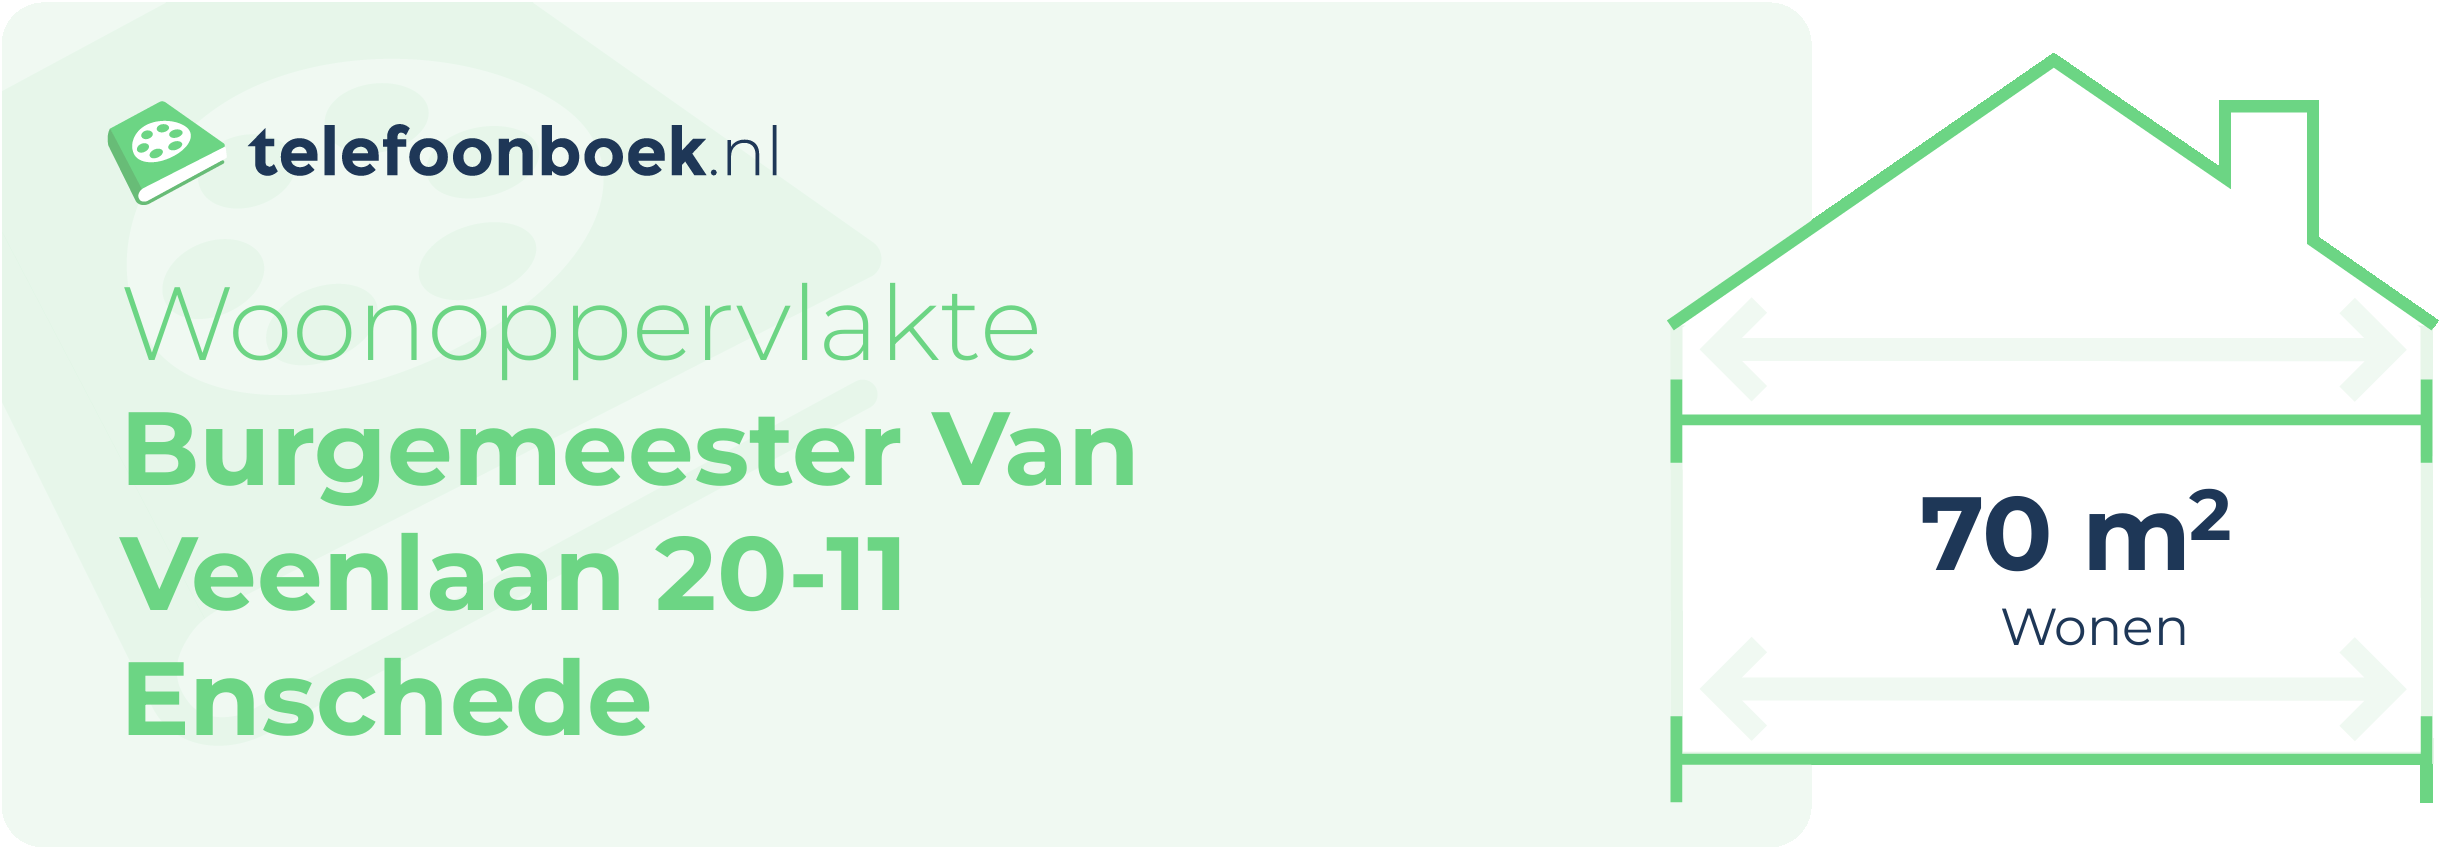 Woonoppervlakte Burgemeester Van Veenlaan 20-11 Enschede